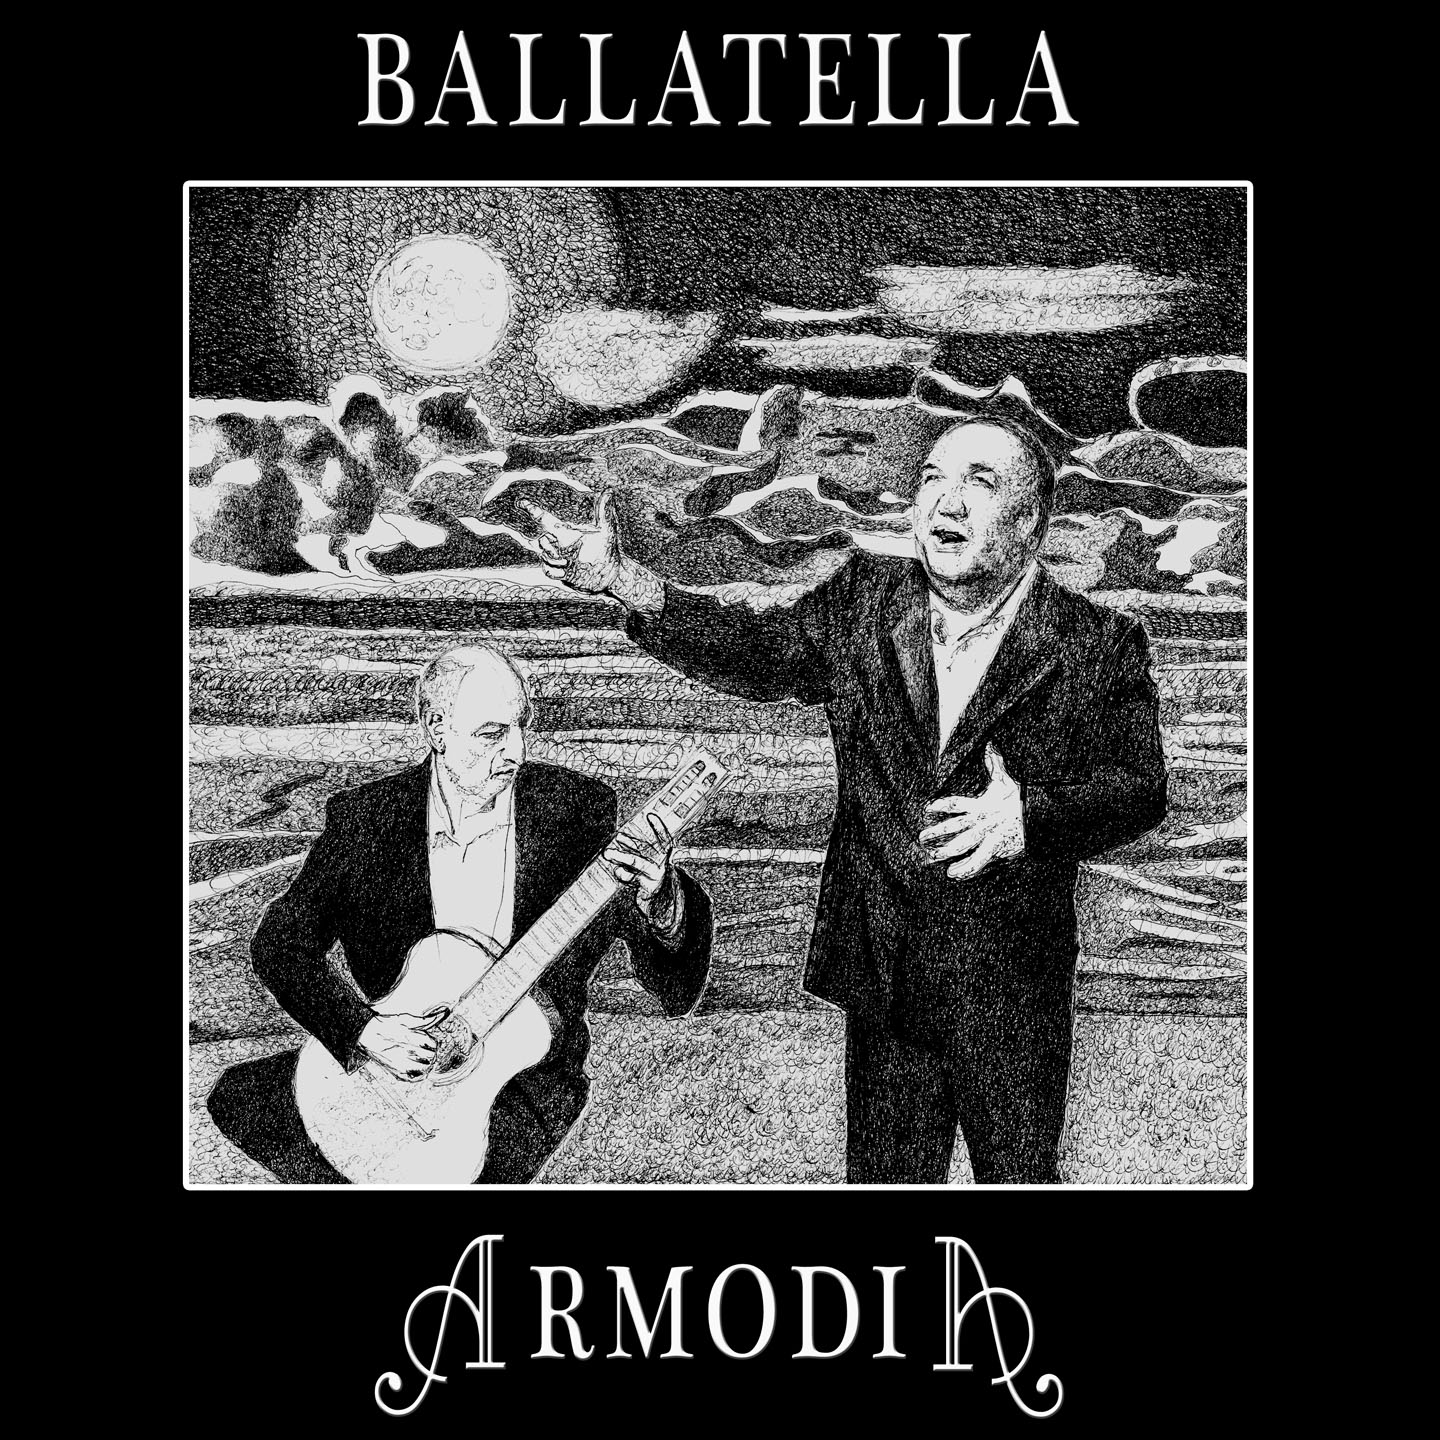 Recensioni. “BALLATELLA” il nuovo singolo degli ARMODIA, da oggi in tutti i Digital Stores. Pubblicato dall’etichetta: Terzo Millennio Records